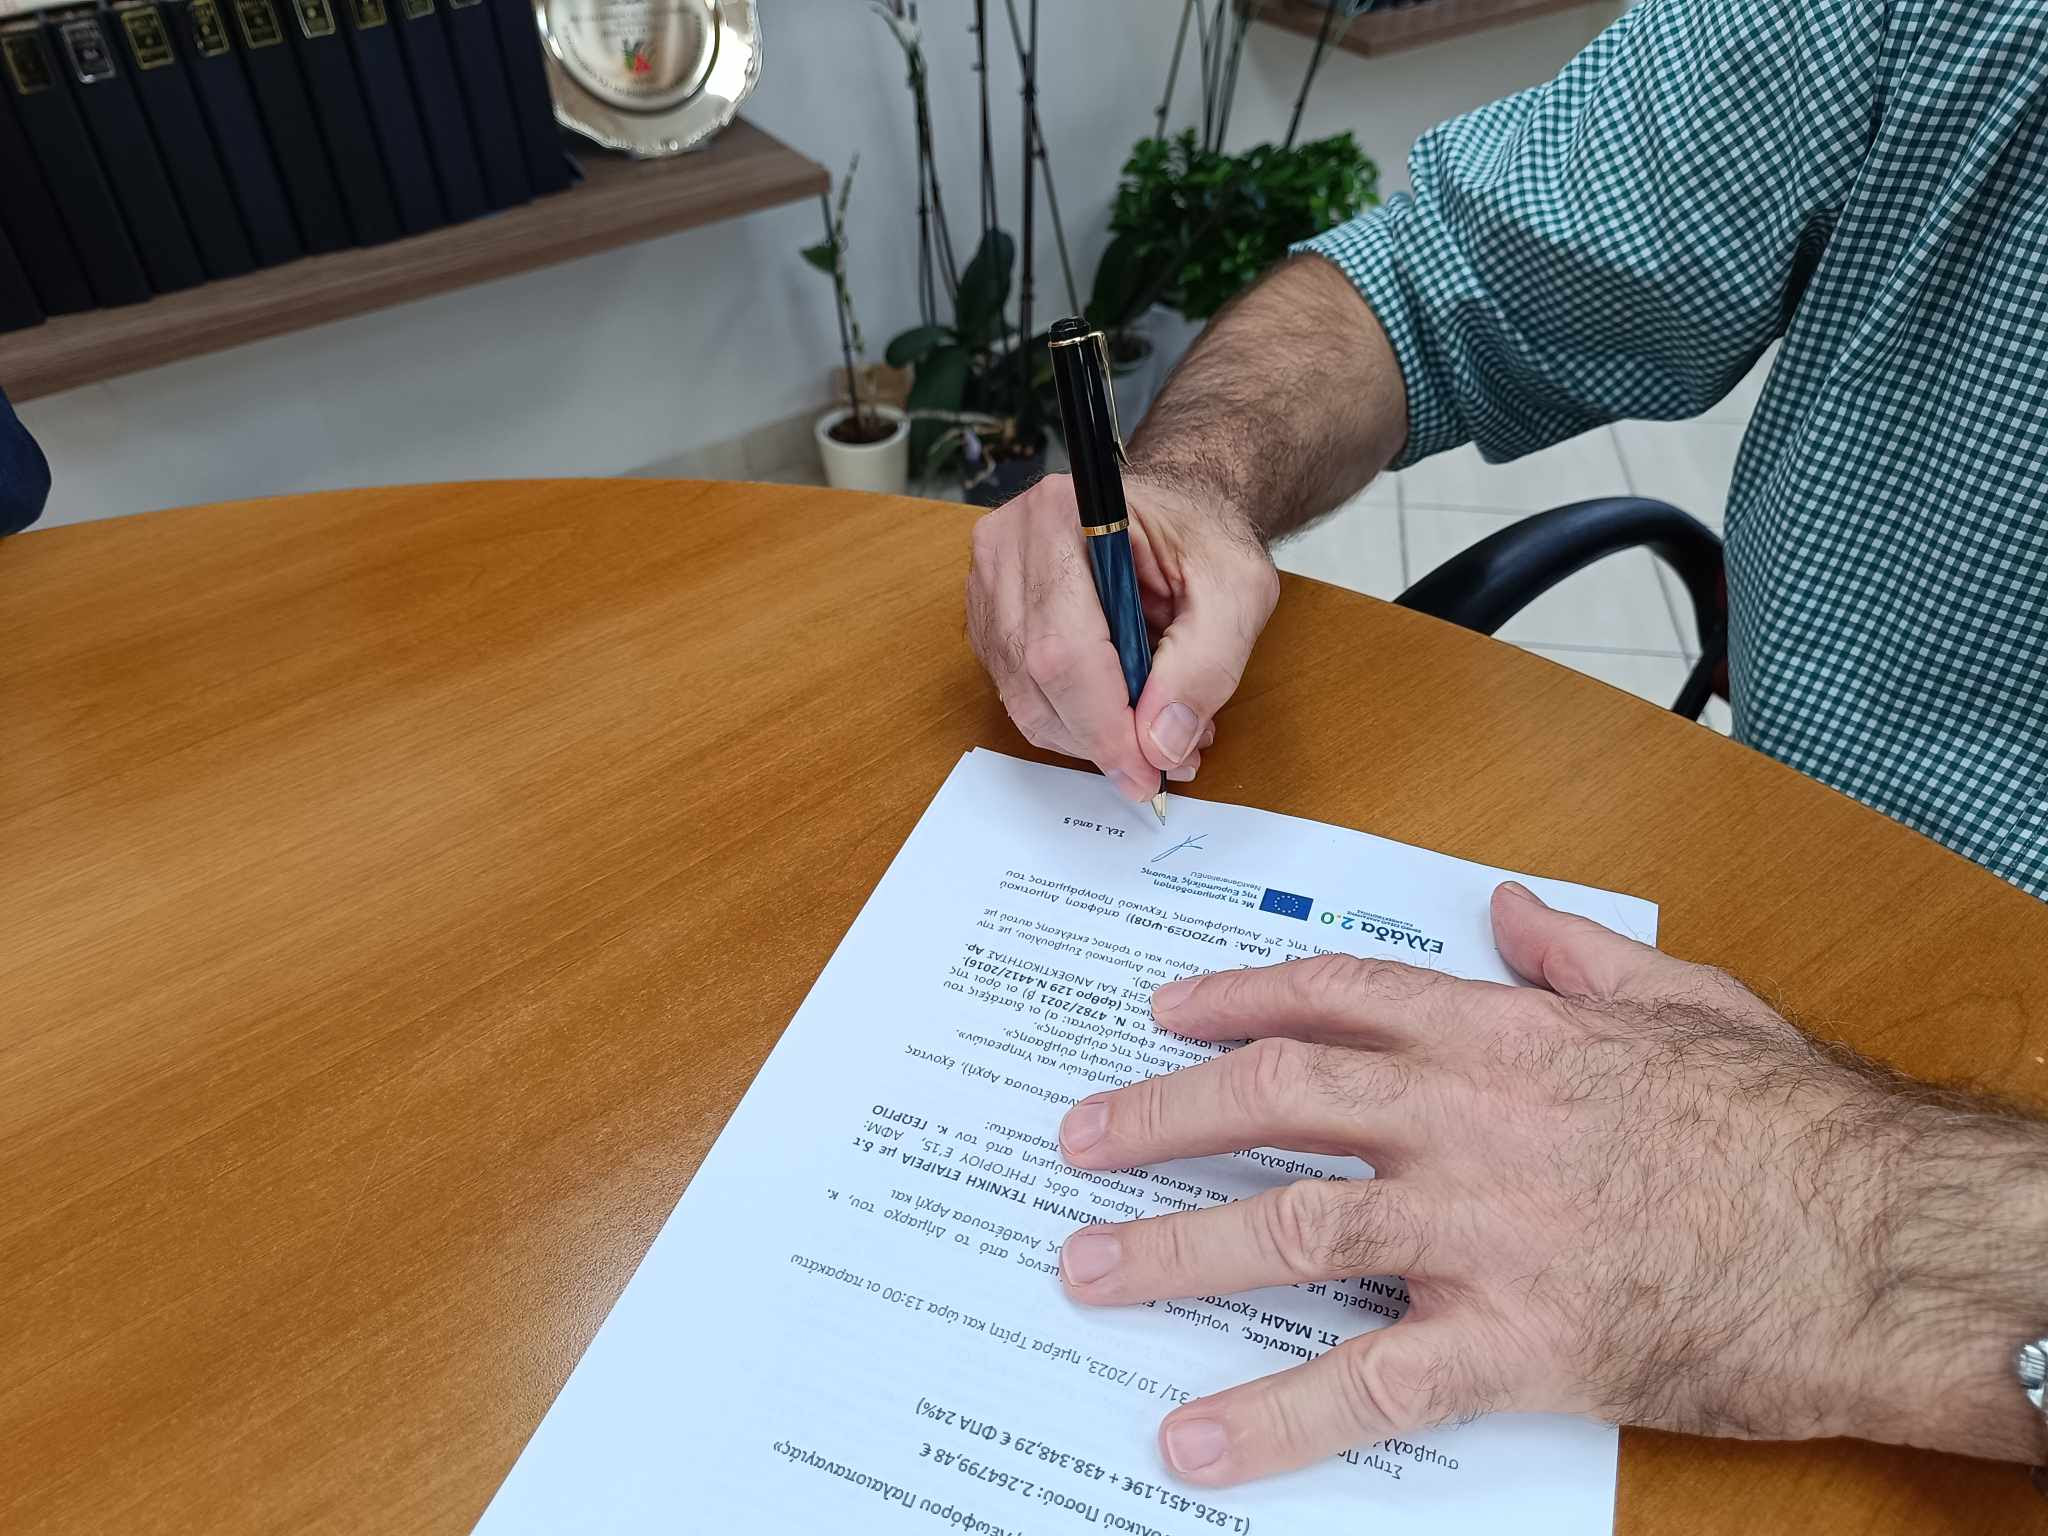 Δήμος Παιανίας: Υπογράφηκε η σύμβαση για το έργο οδικής ασφάλειας στη Λεωφόρο Παλαιοπαναγιάς – Ξεκινούν οι εργασίες